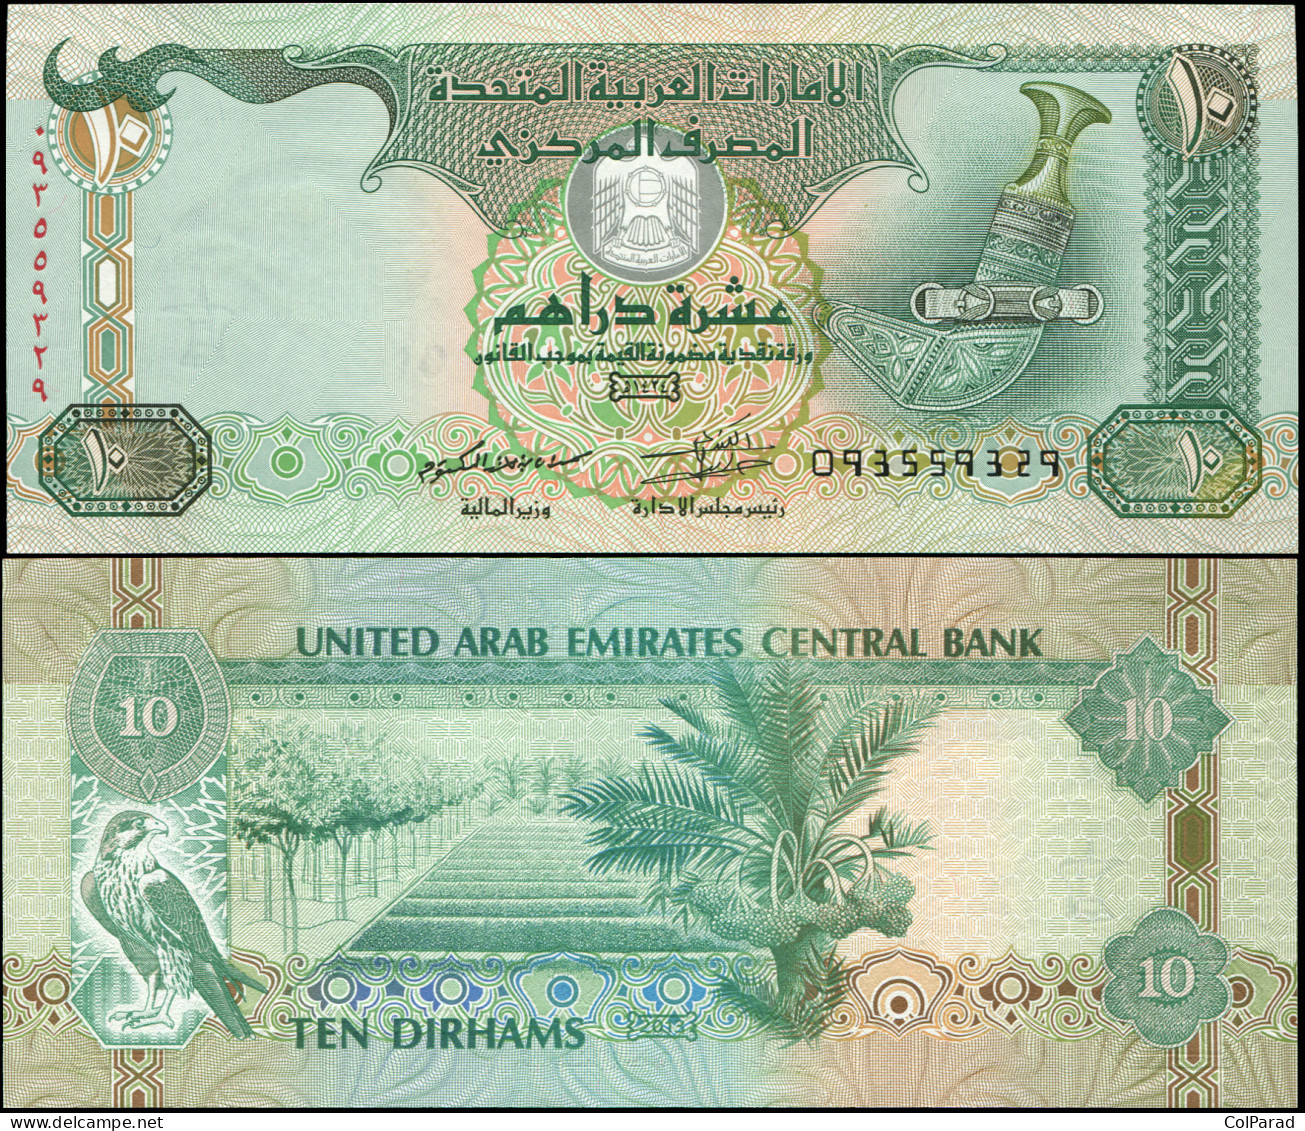 UNITED ARAB EMIRATES 10 DIRHAMS - ١٤٣٤ / 2013 - Unc - P.27b Paper Banknote - Ver. Arab. Emirate